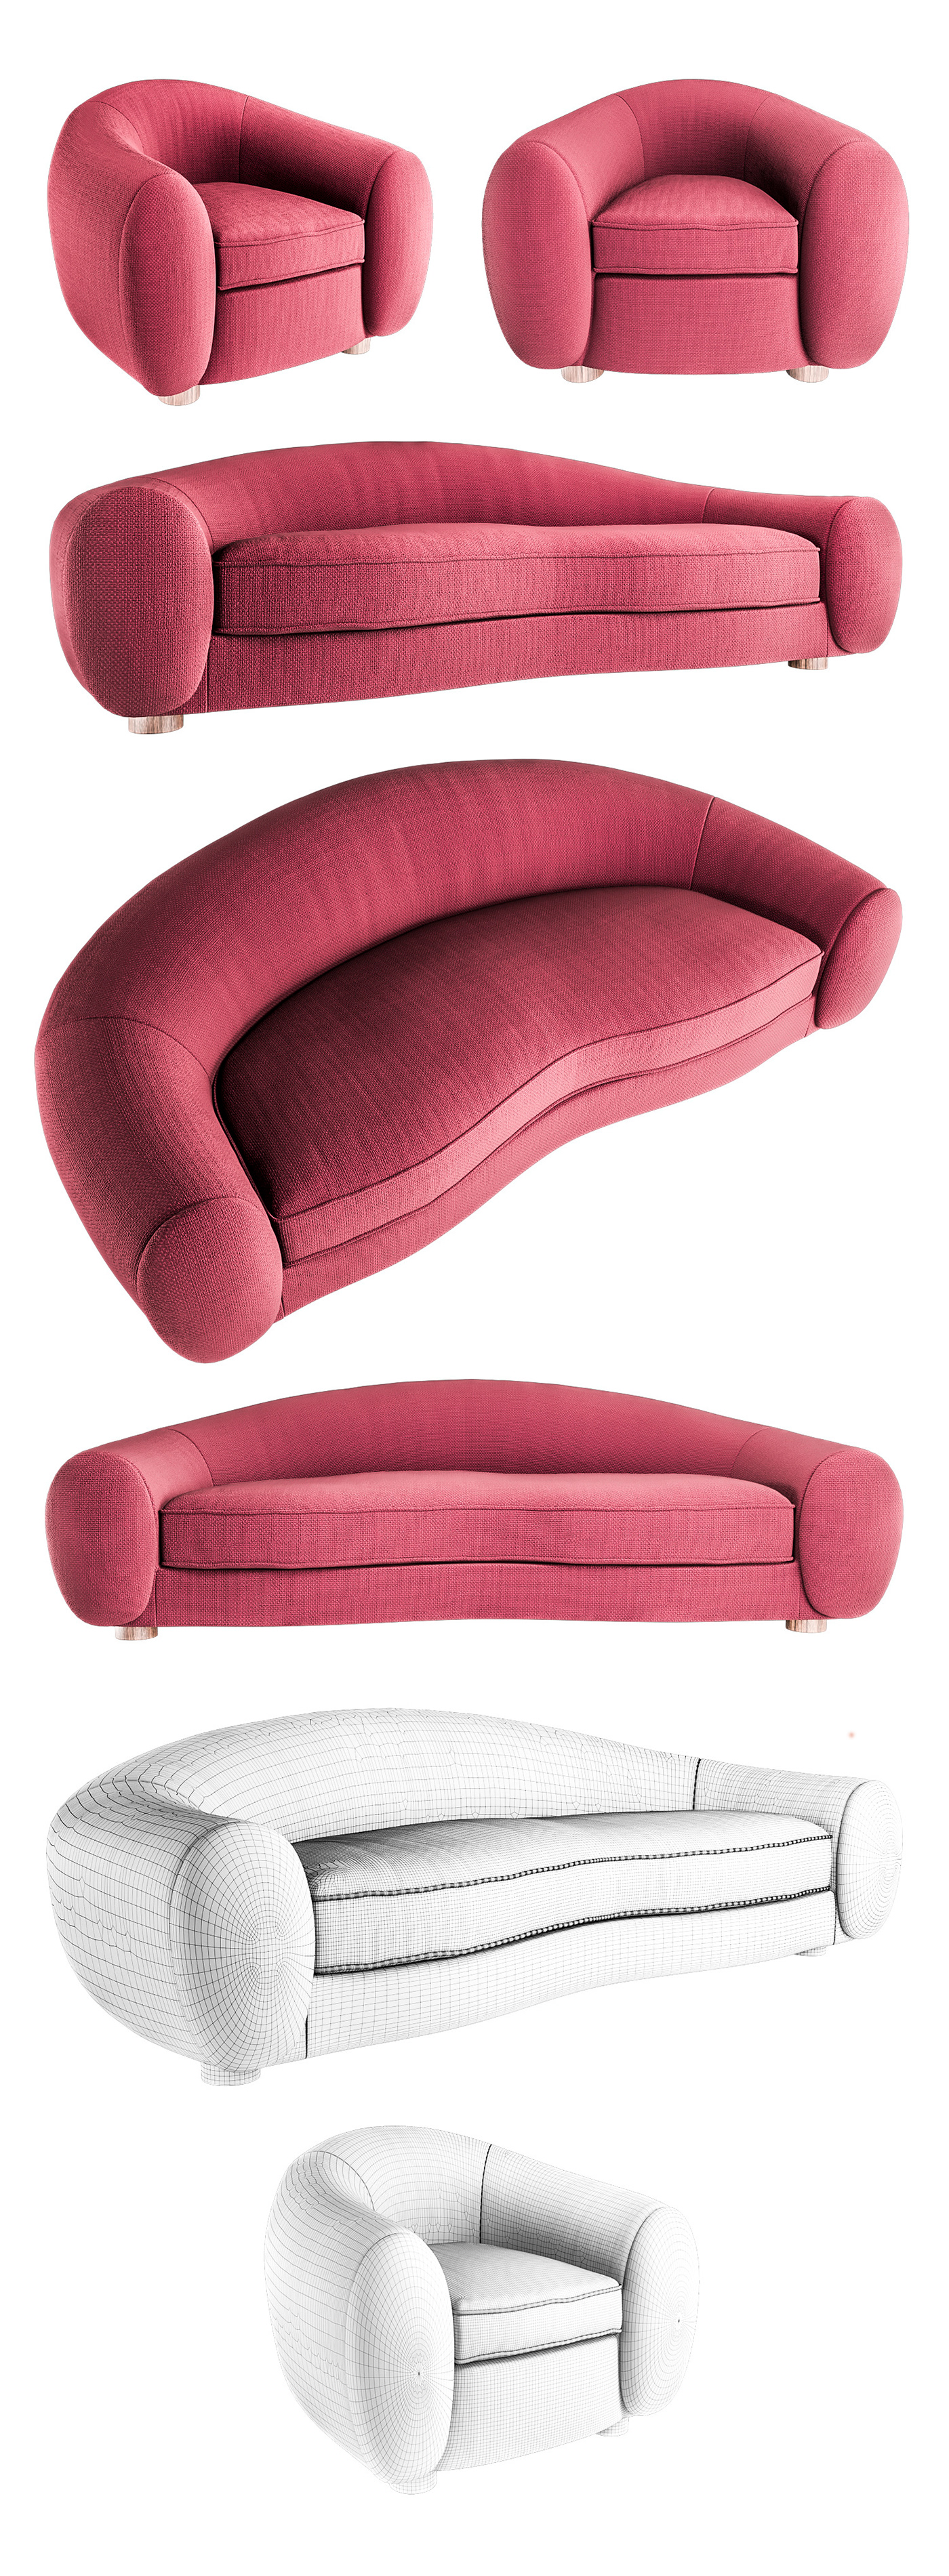 sofa 3D modeling furniture modeling